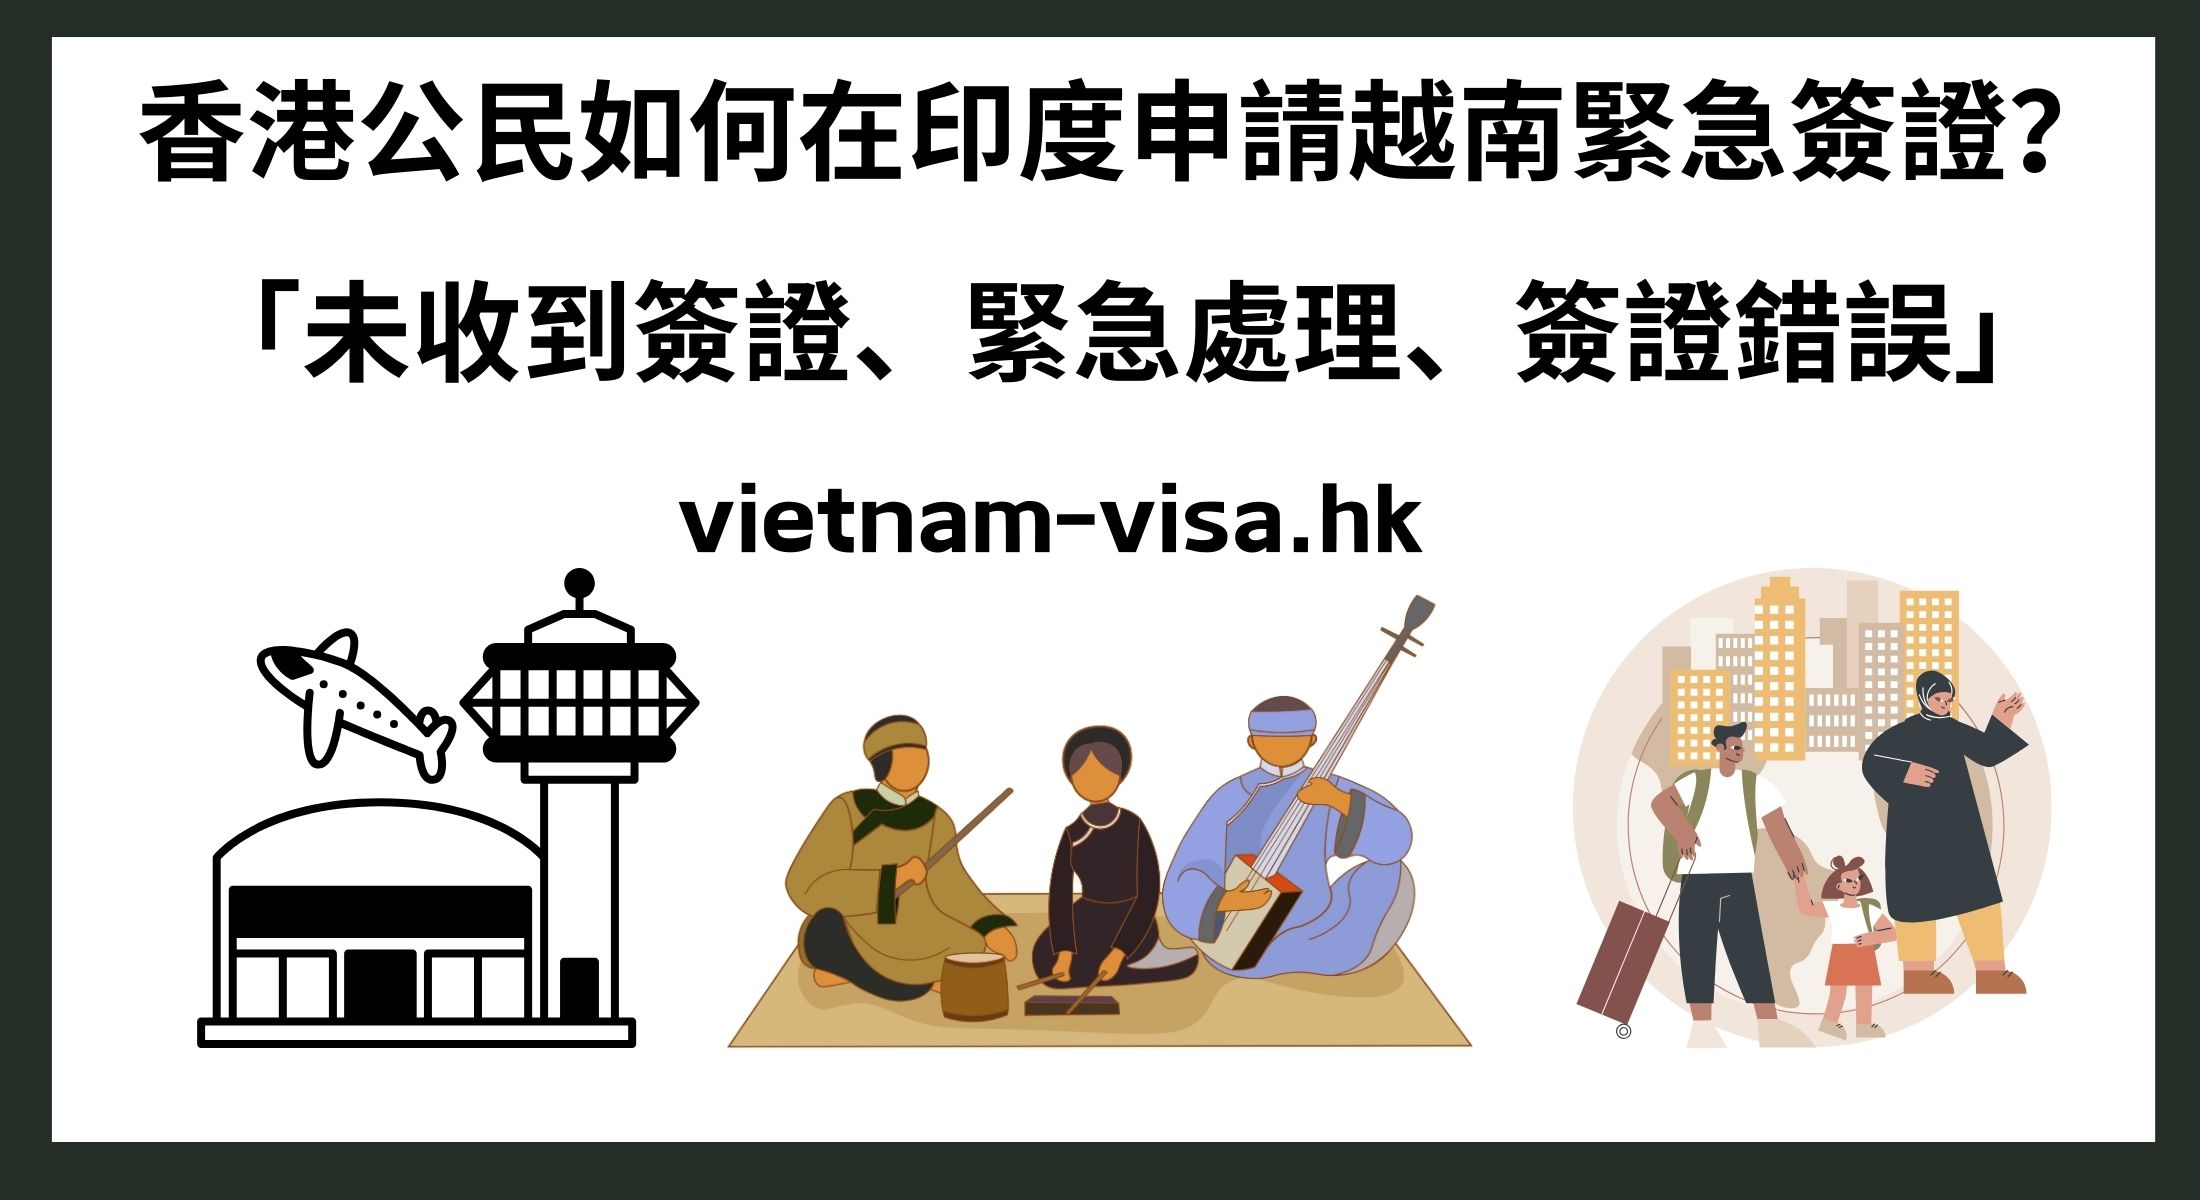 香港公民如何在印度申請越南緊急簽證？ 「未收到簽證、緊急處理、簽證錯誤」